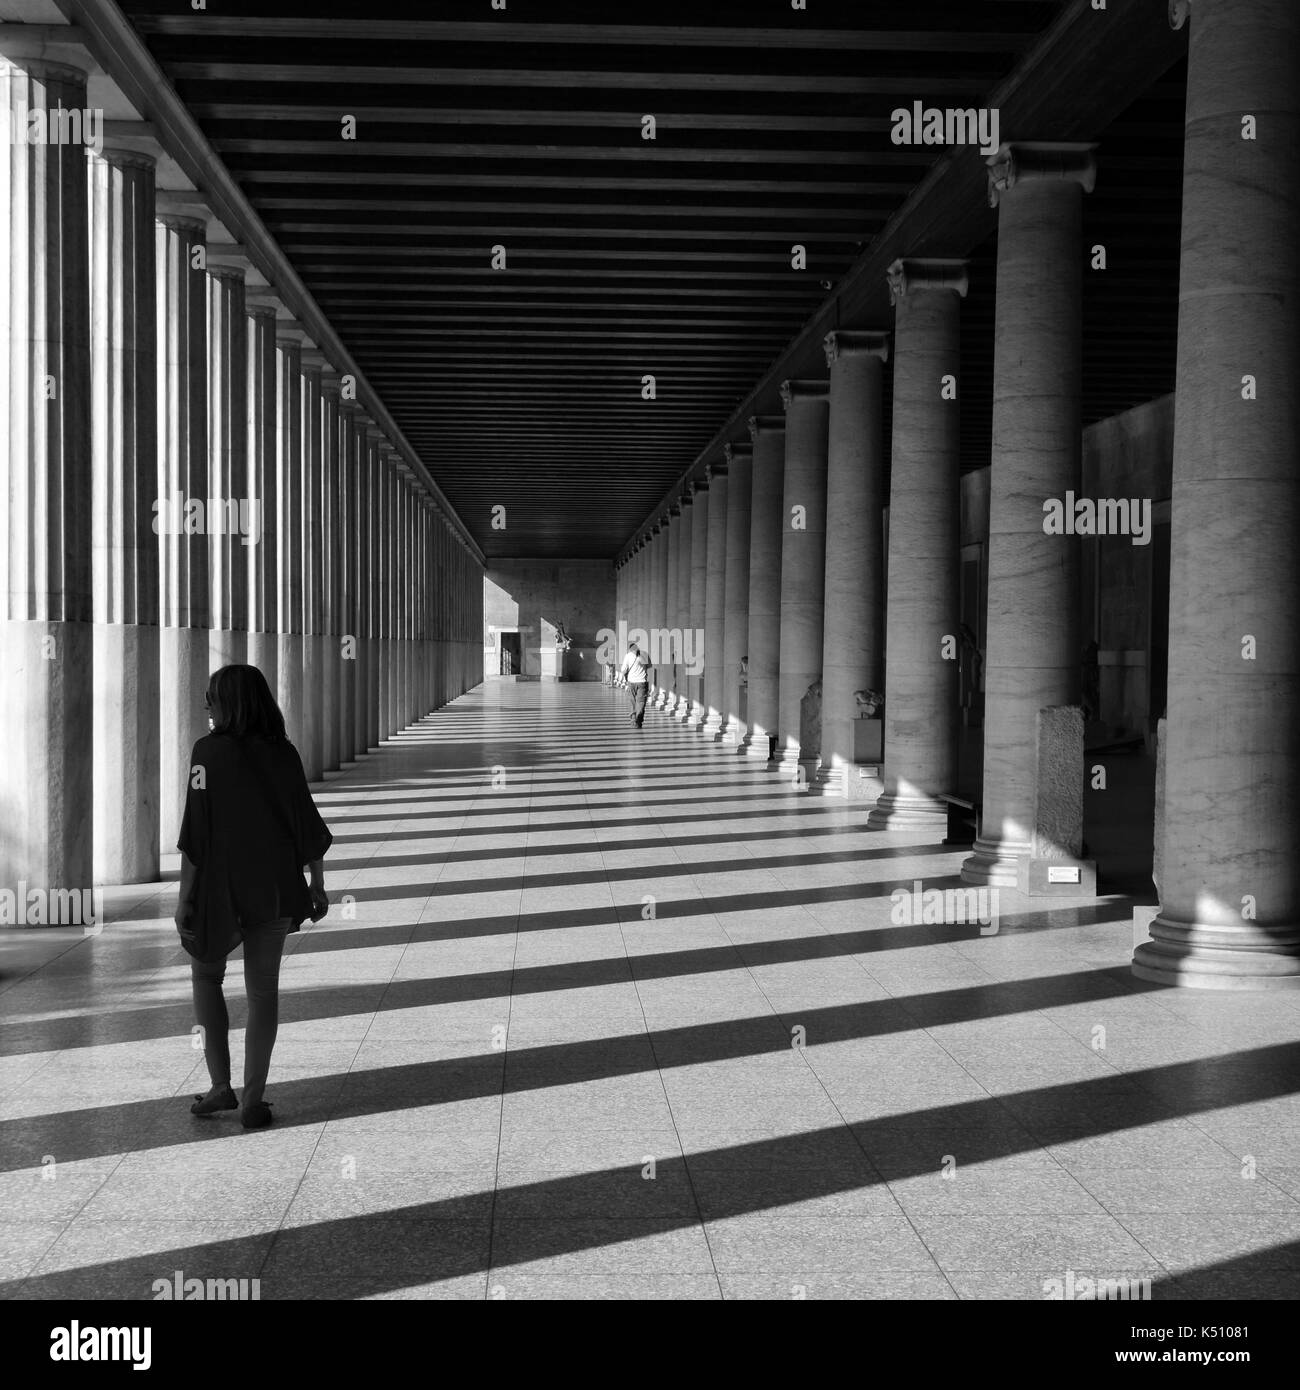 Atenas, Grecia - Octubre 14, 2015: la gente en el Attalos stoa en la antigua ágora. La luz y la sombra a través de columnas de mármol negro arquitectura abstracta Foto de stock